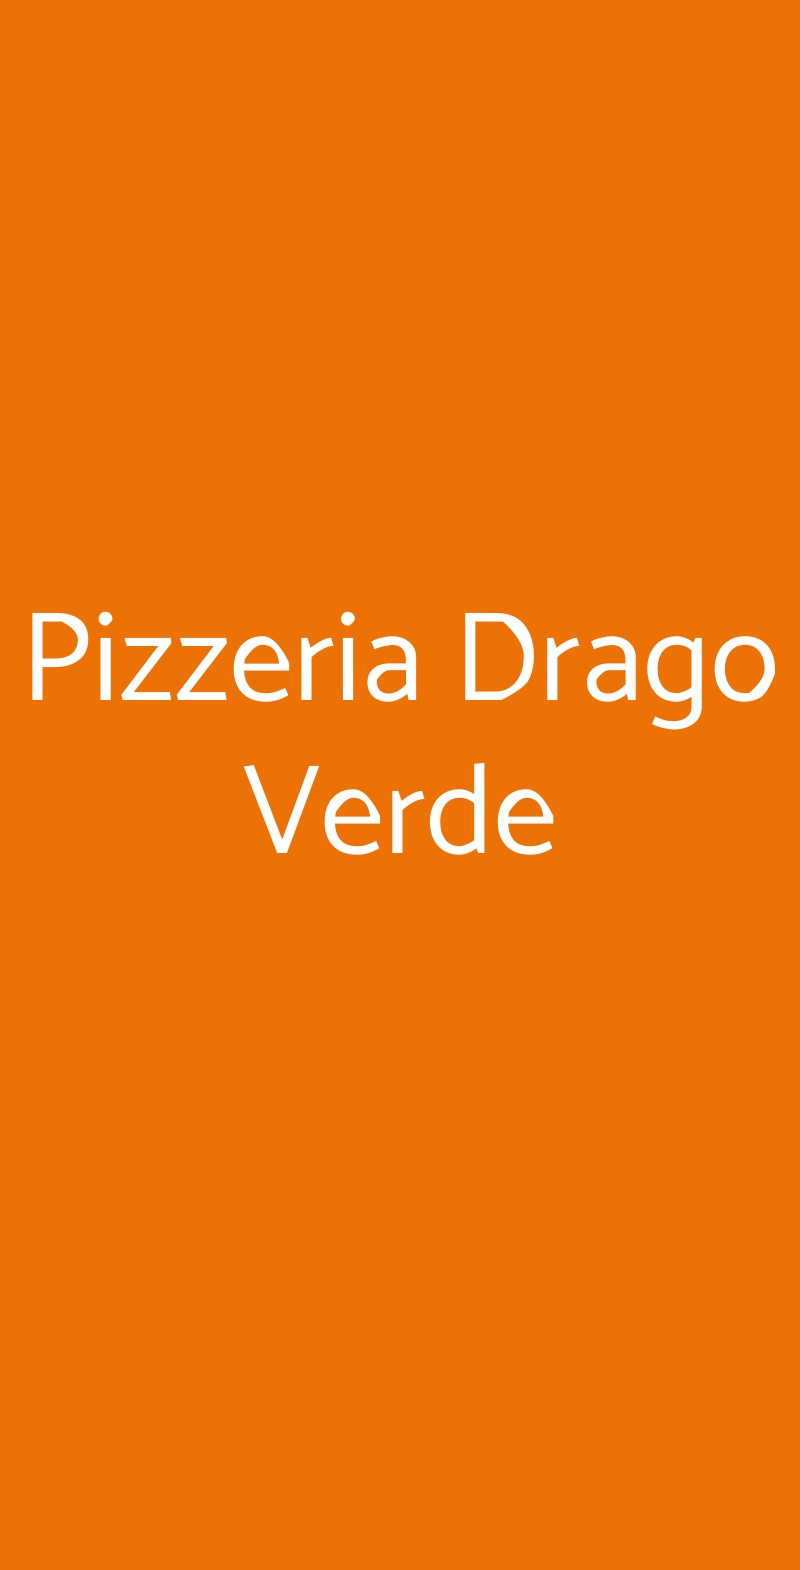 Pizzeria Drago Verde Bologna menù 1 pagina